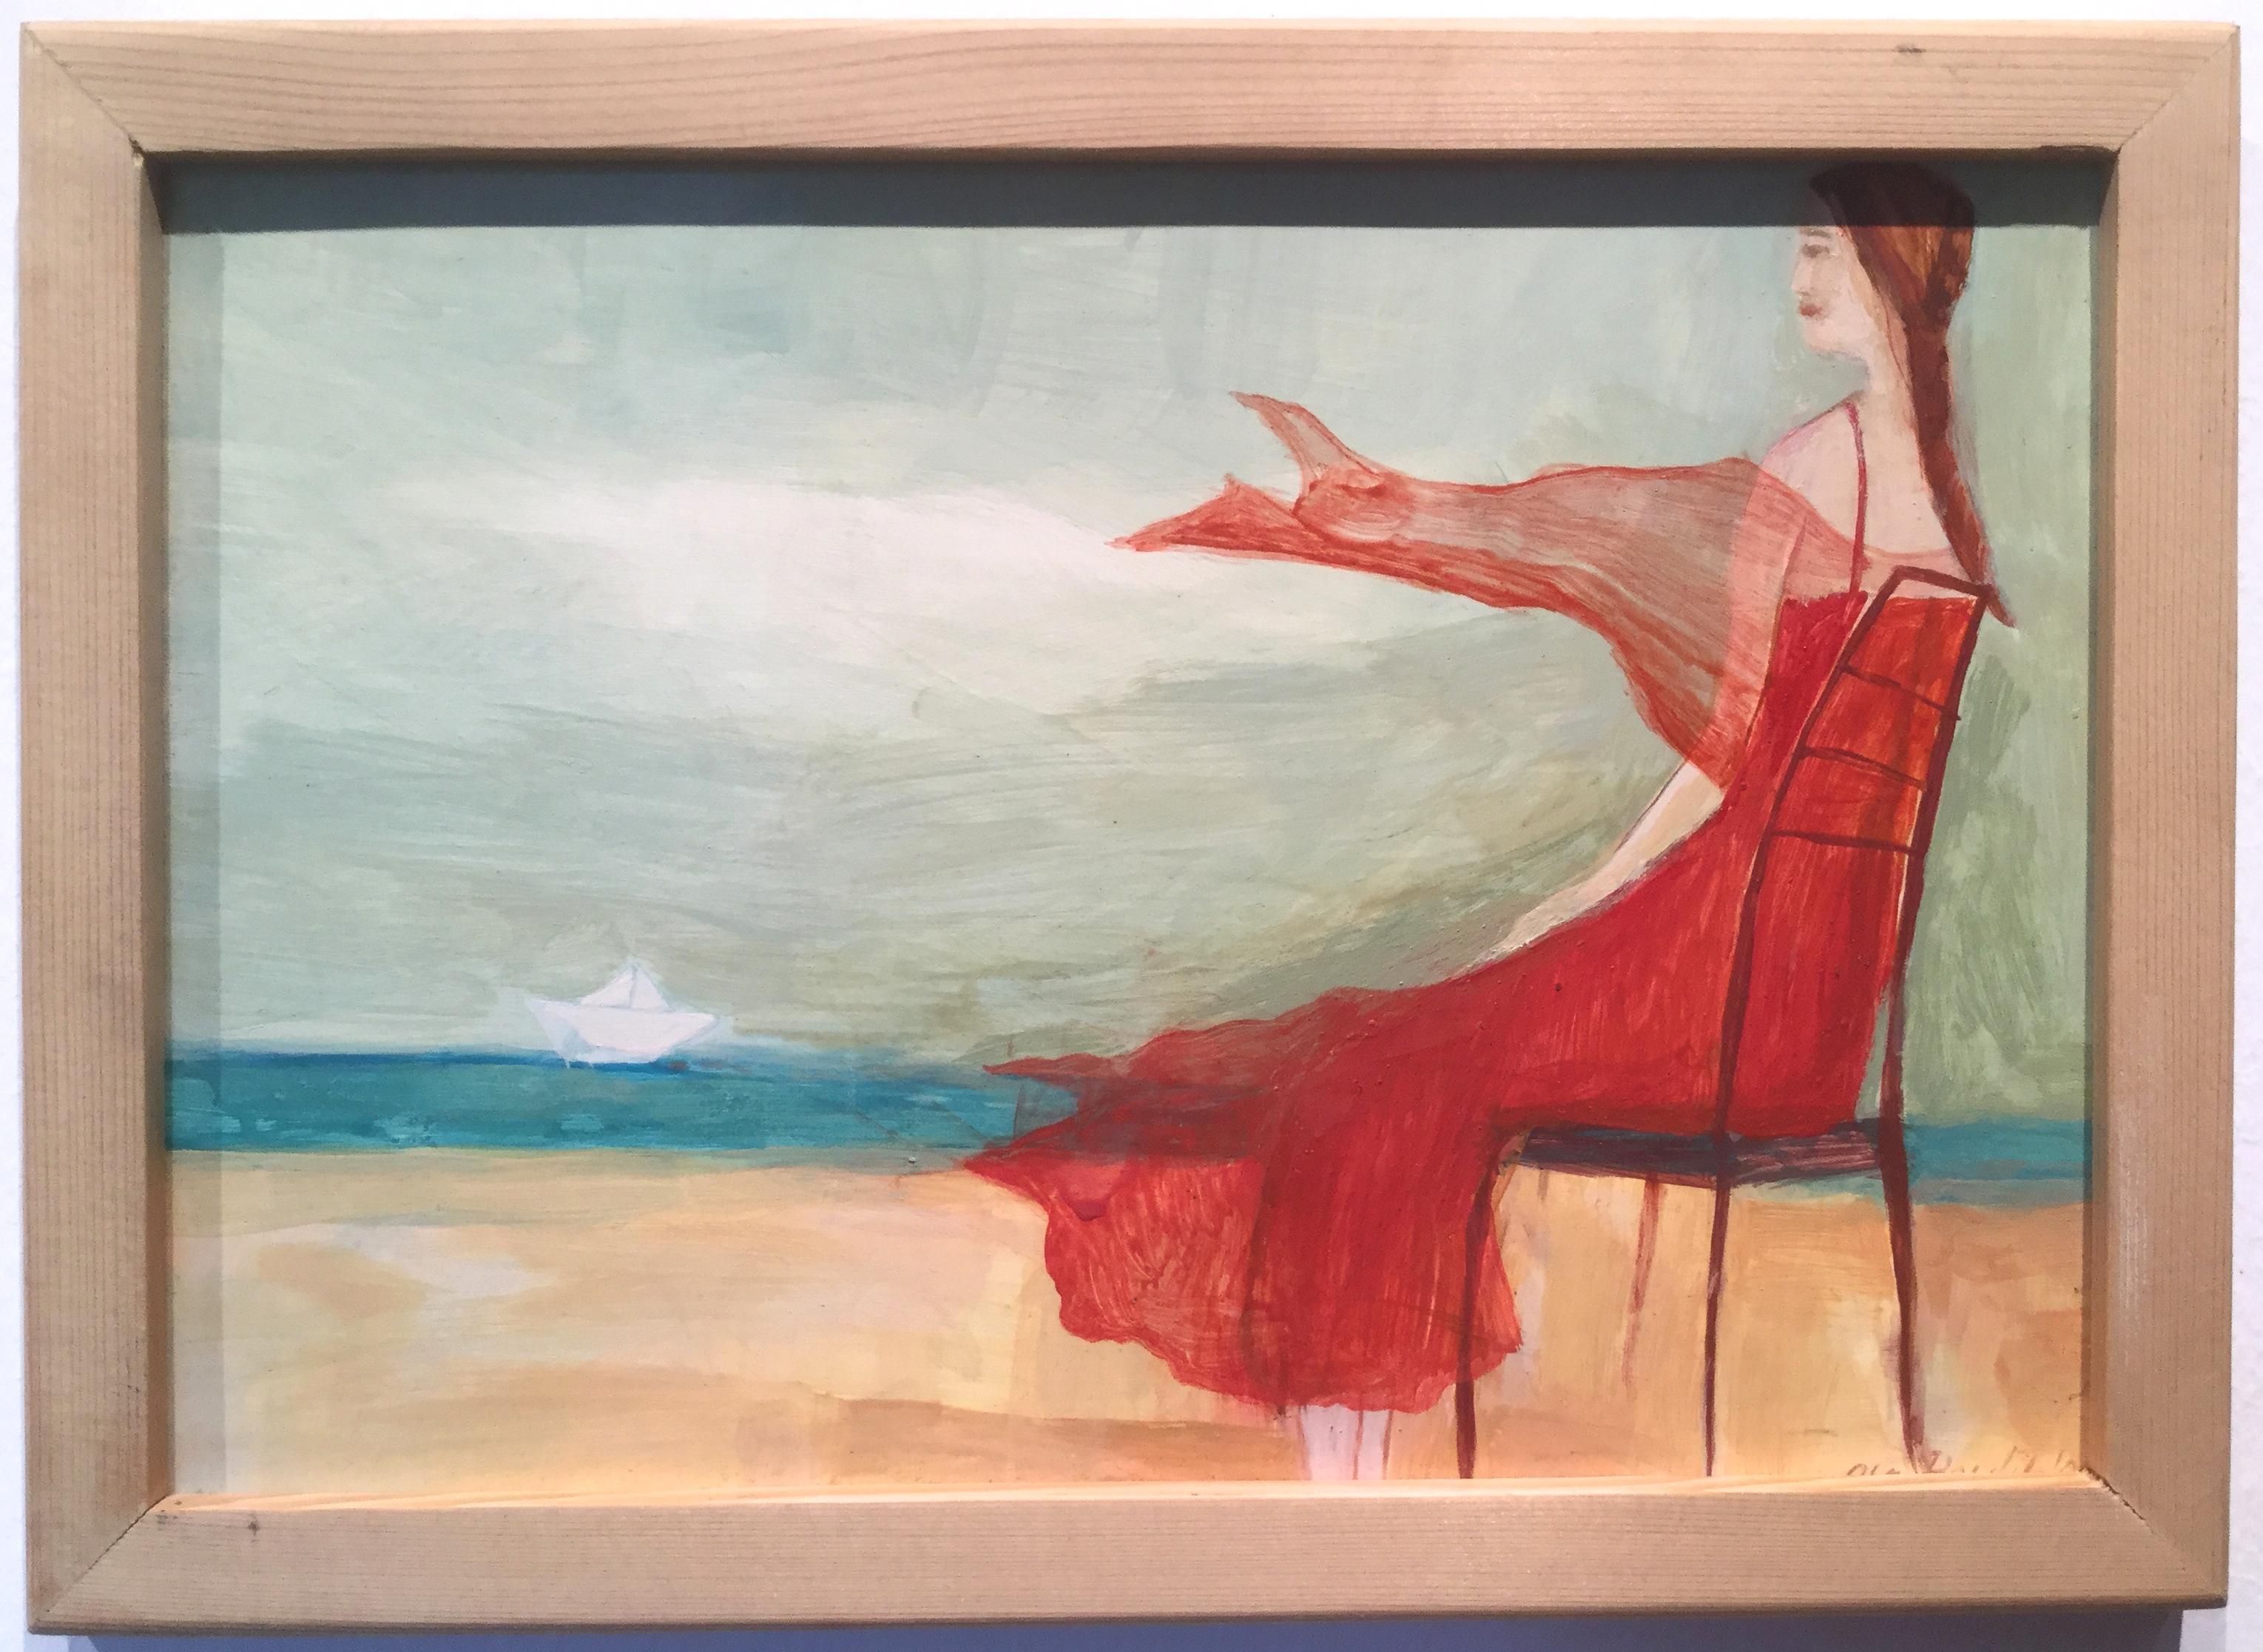 Mädchen in rotem Kleid mit Blicken auf das Meer - Anmutiges illustriertes, romantisches Gemälde